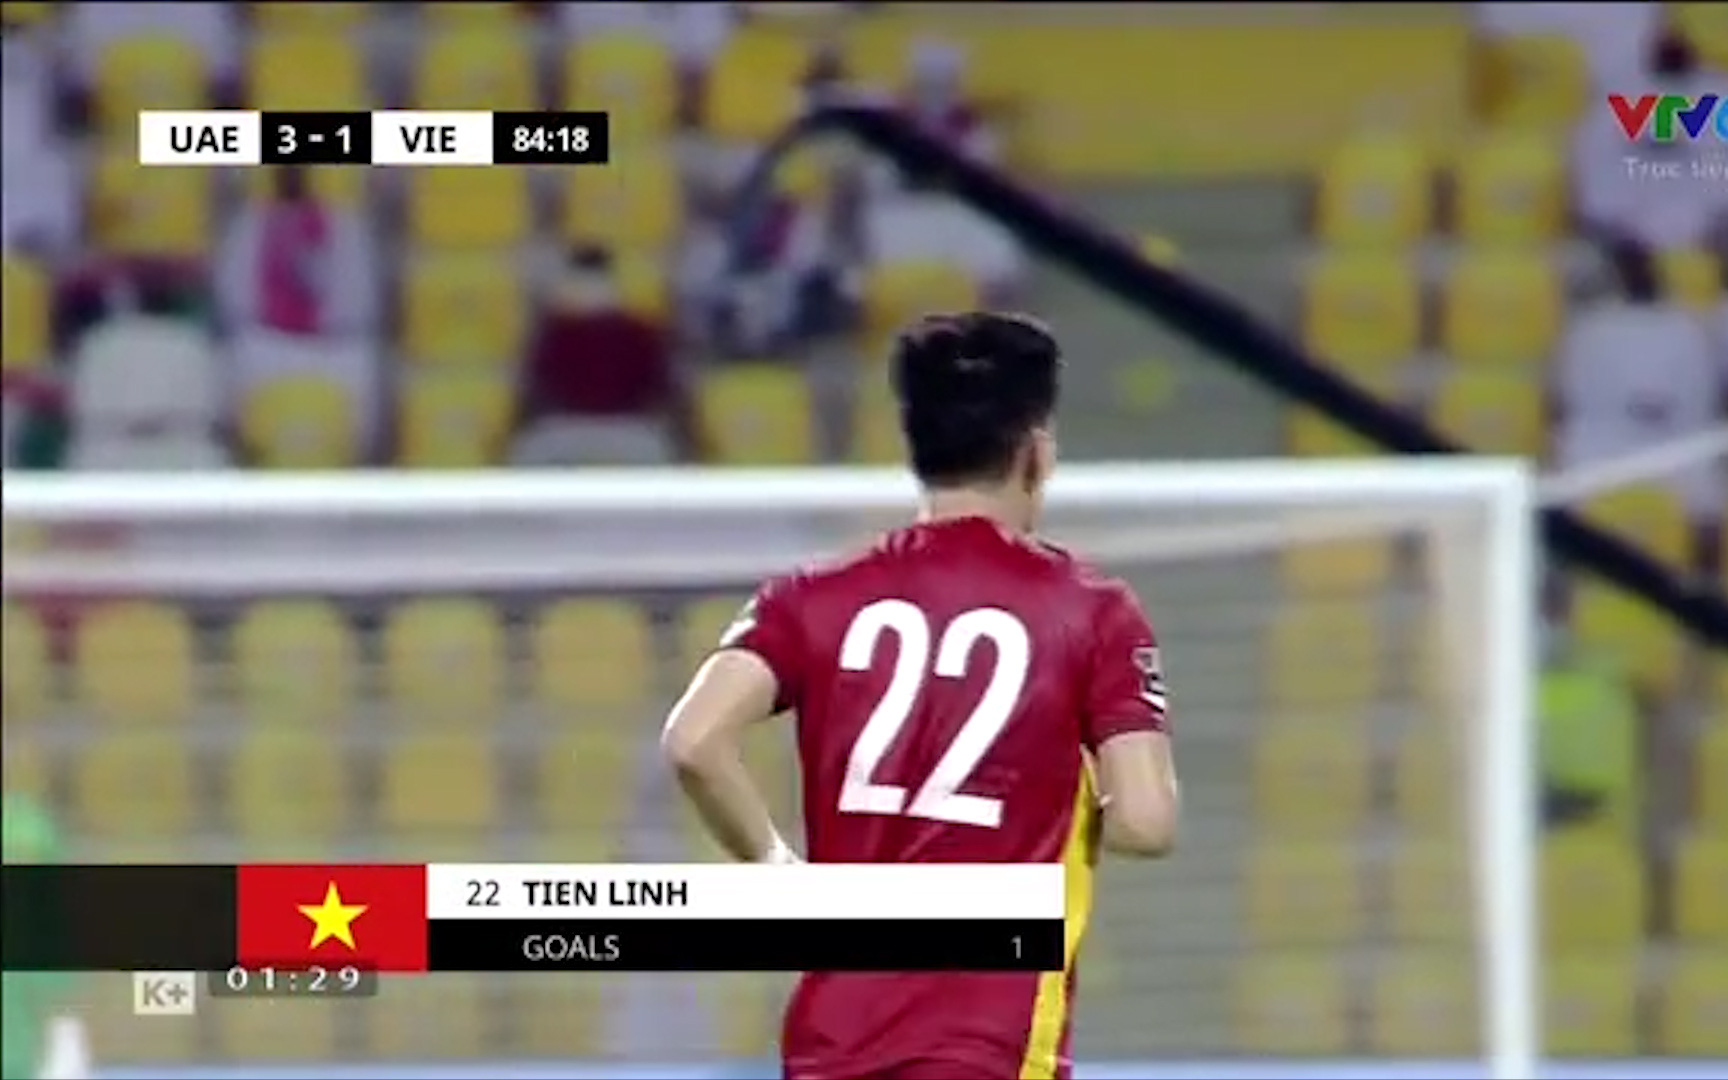 Ghi bàn vào lưới UAE, Tiến Linh cân bằng kỷ lục suốt 20 năm của huyền thoại Nguyễn Hồng Sơn